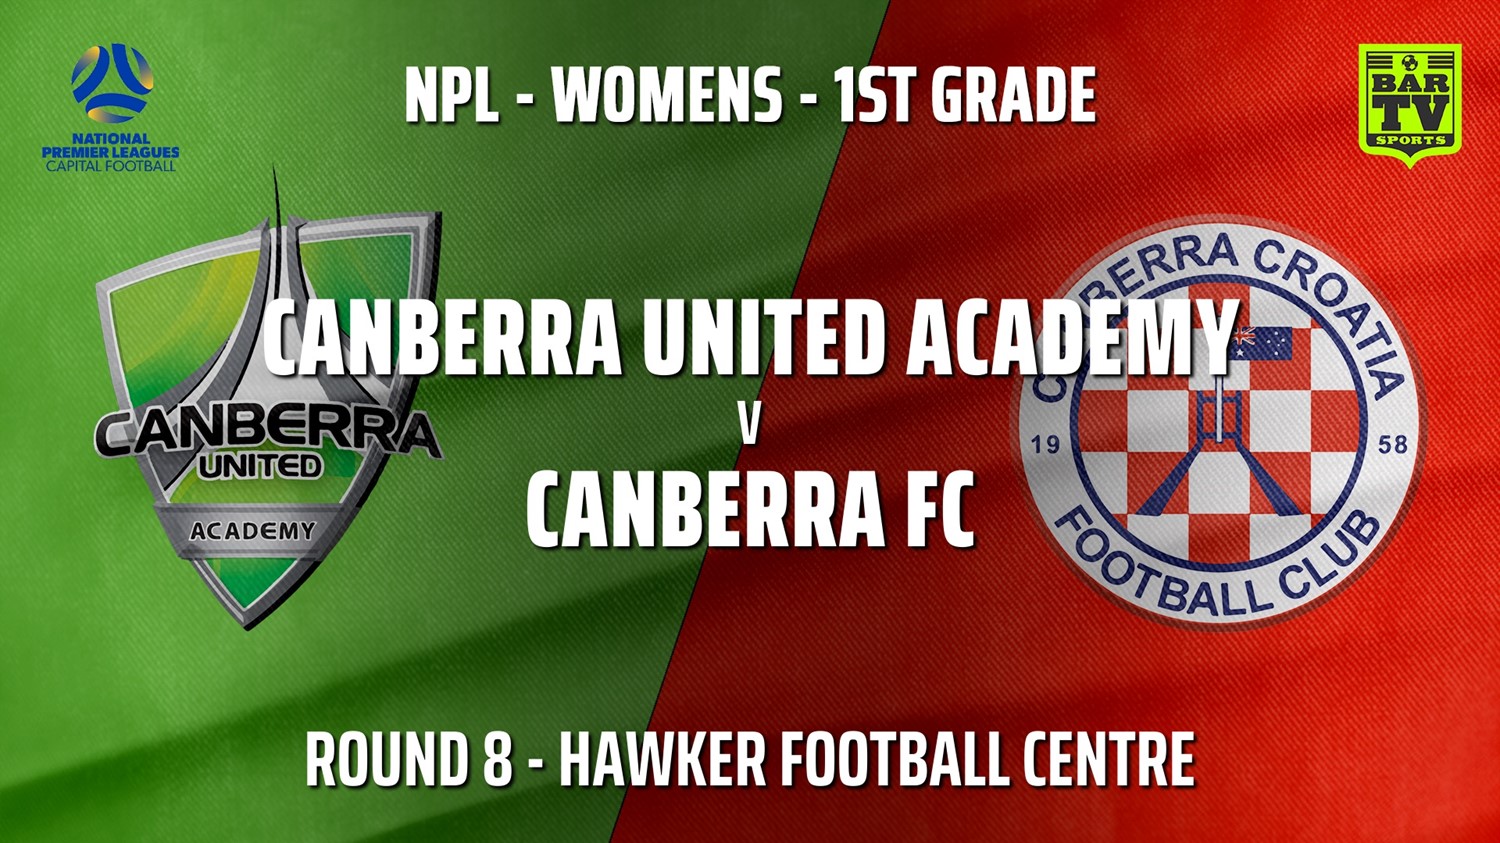 210530-NPLW - Capital Round 8 - Canberra United Academy v Canberra FC (women) Slate Image